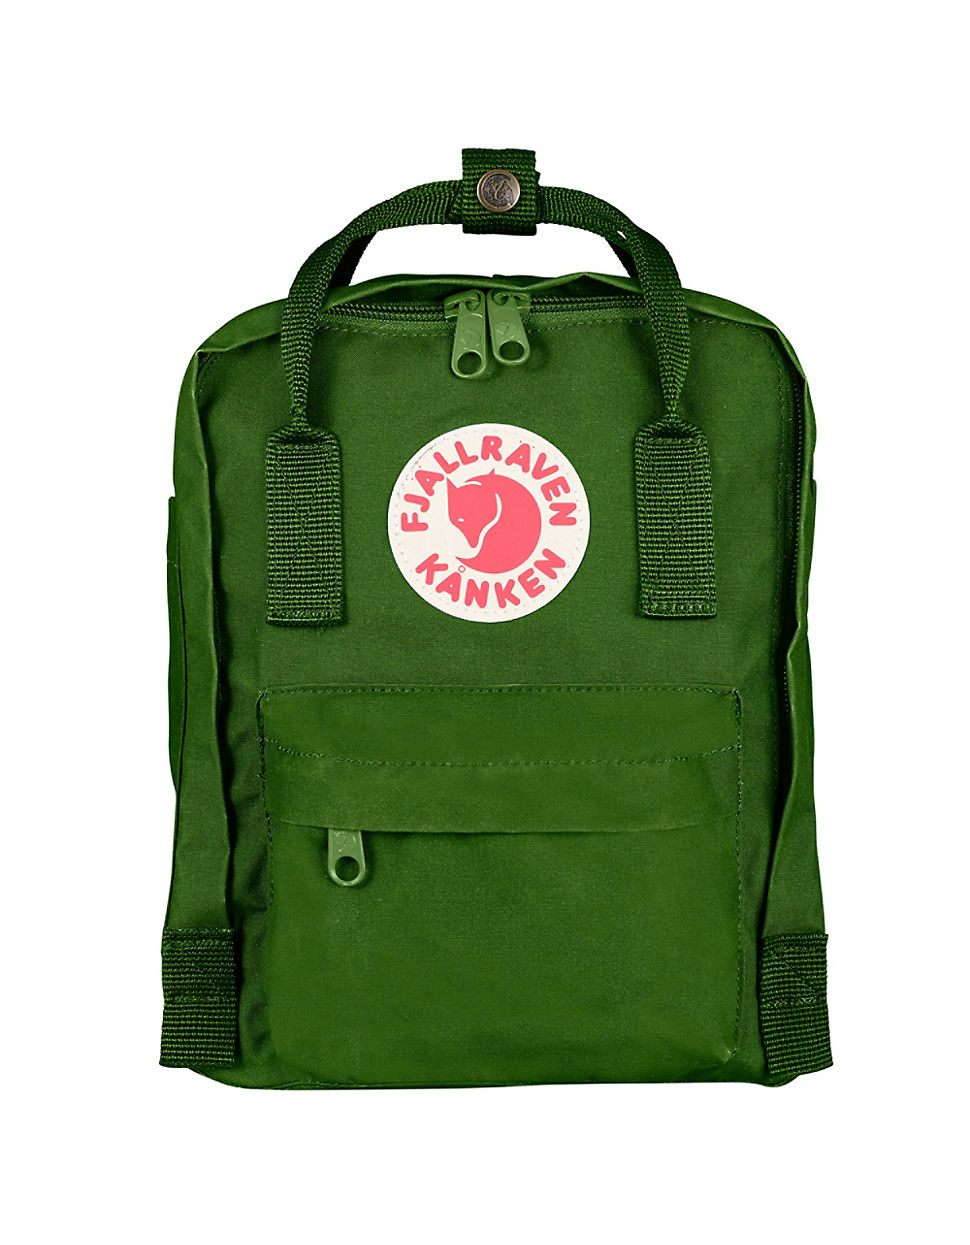 Fjallraven Mini Backpack in Green for Men - Lyst